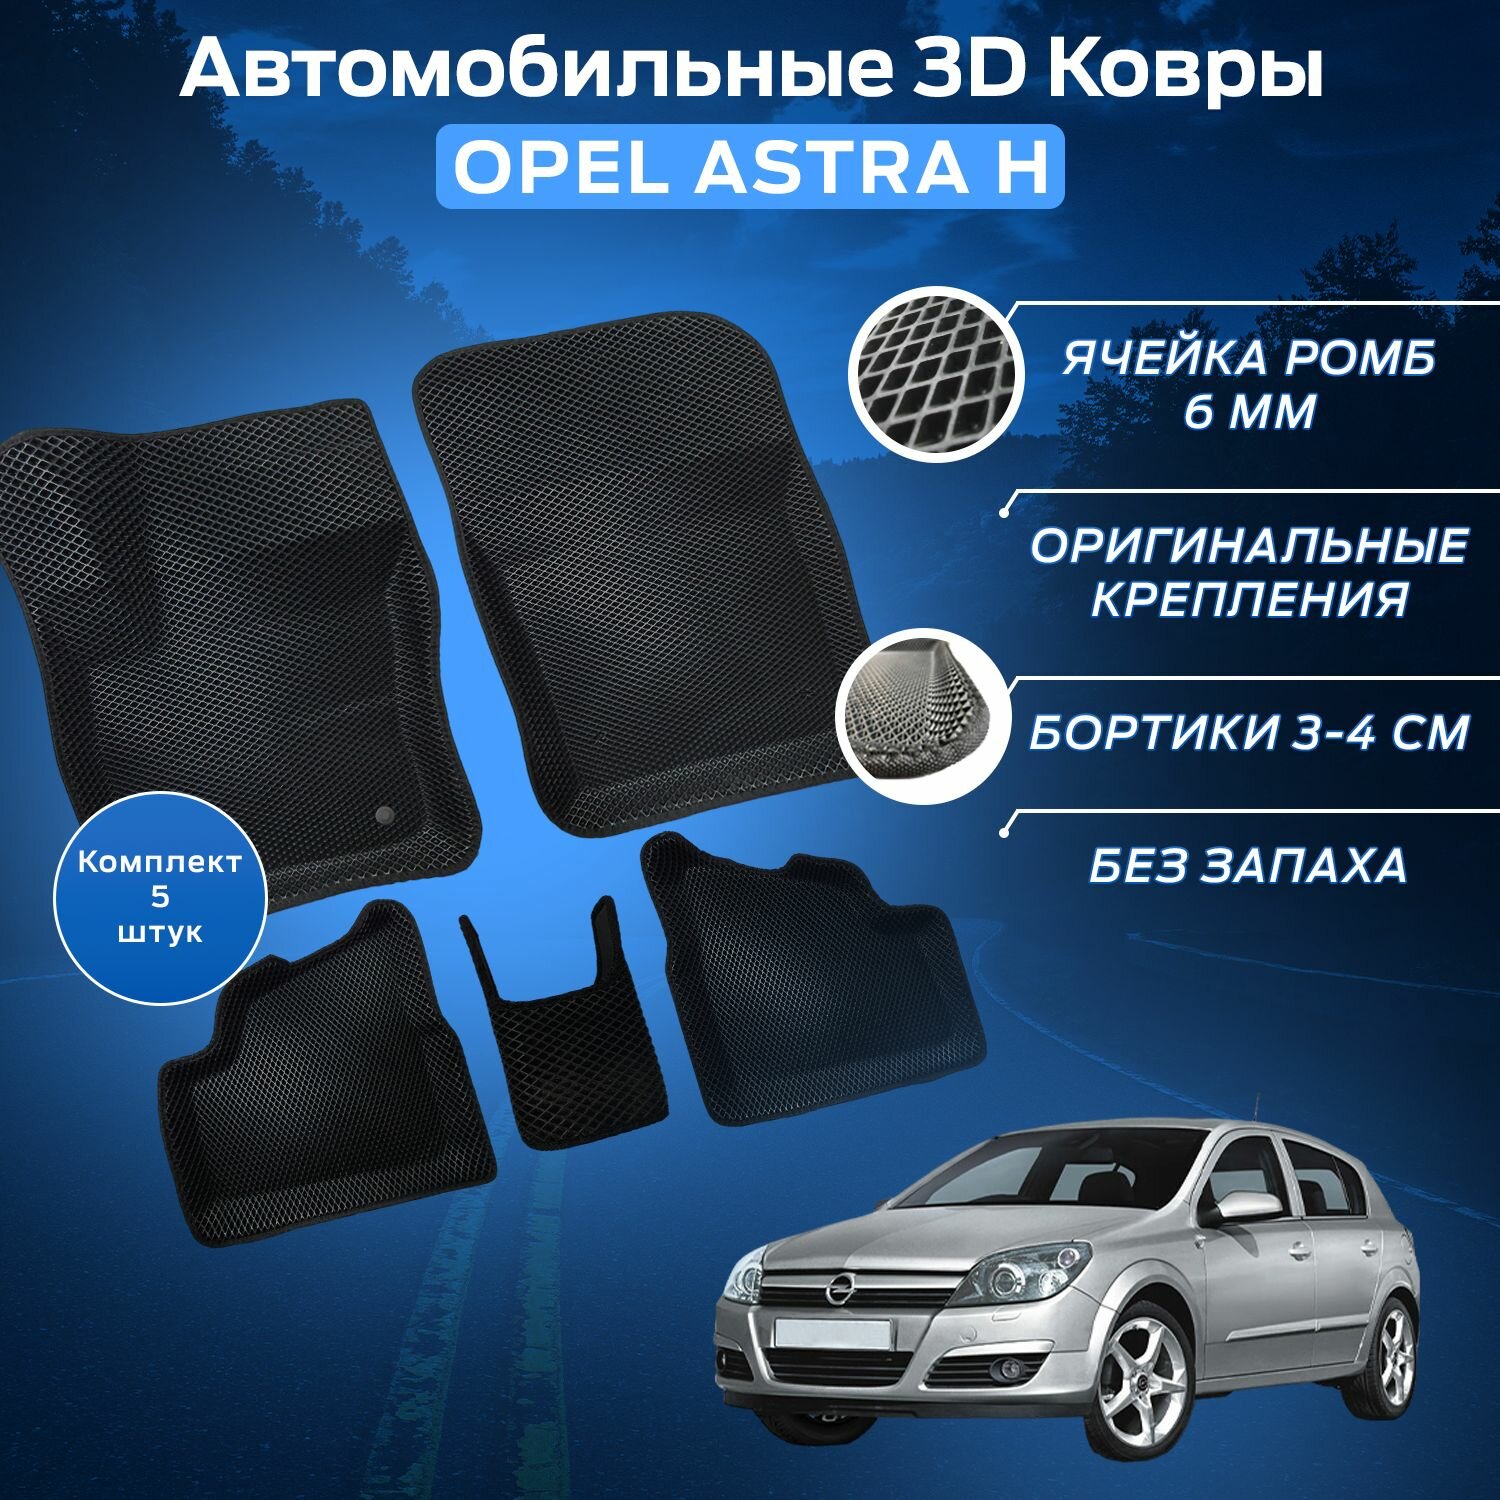 Пресс-EVA 3Д Ковры Опель Астра Н (Ева, эва, коврики с бортами) Opel Astra H